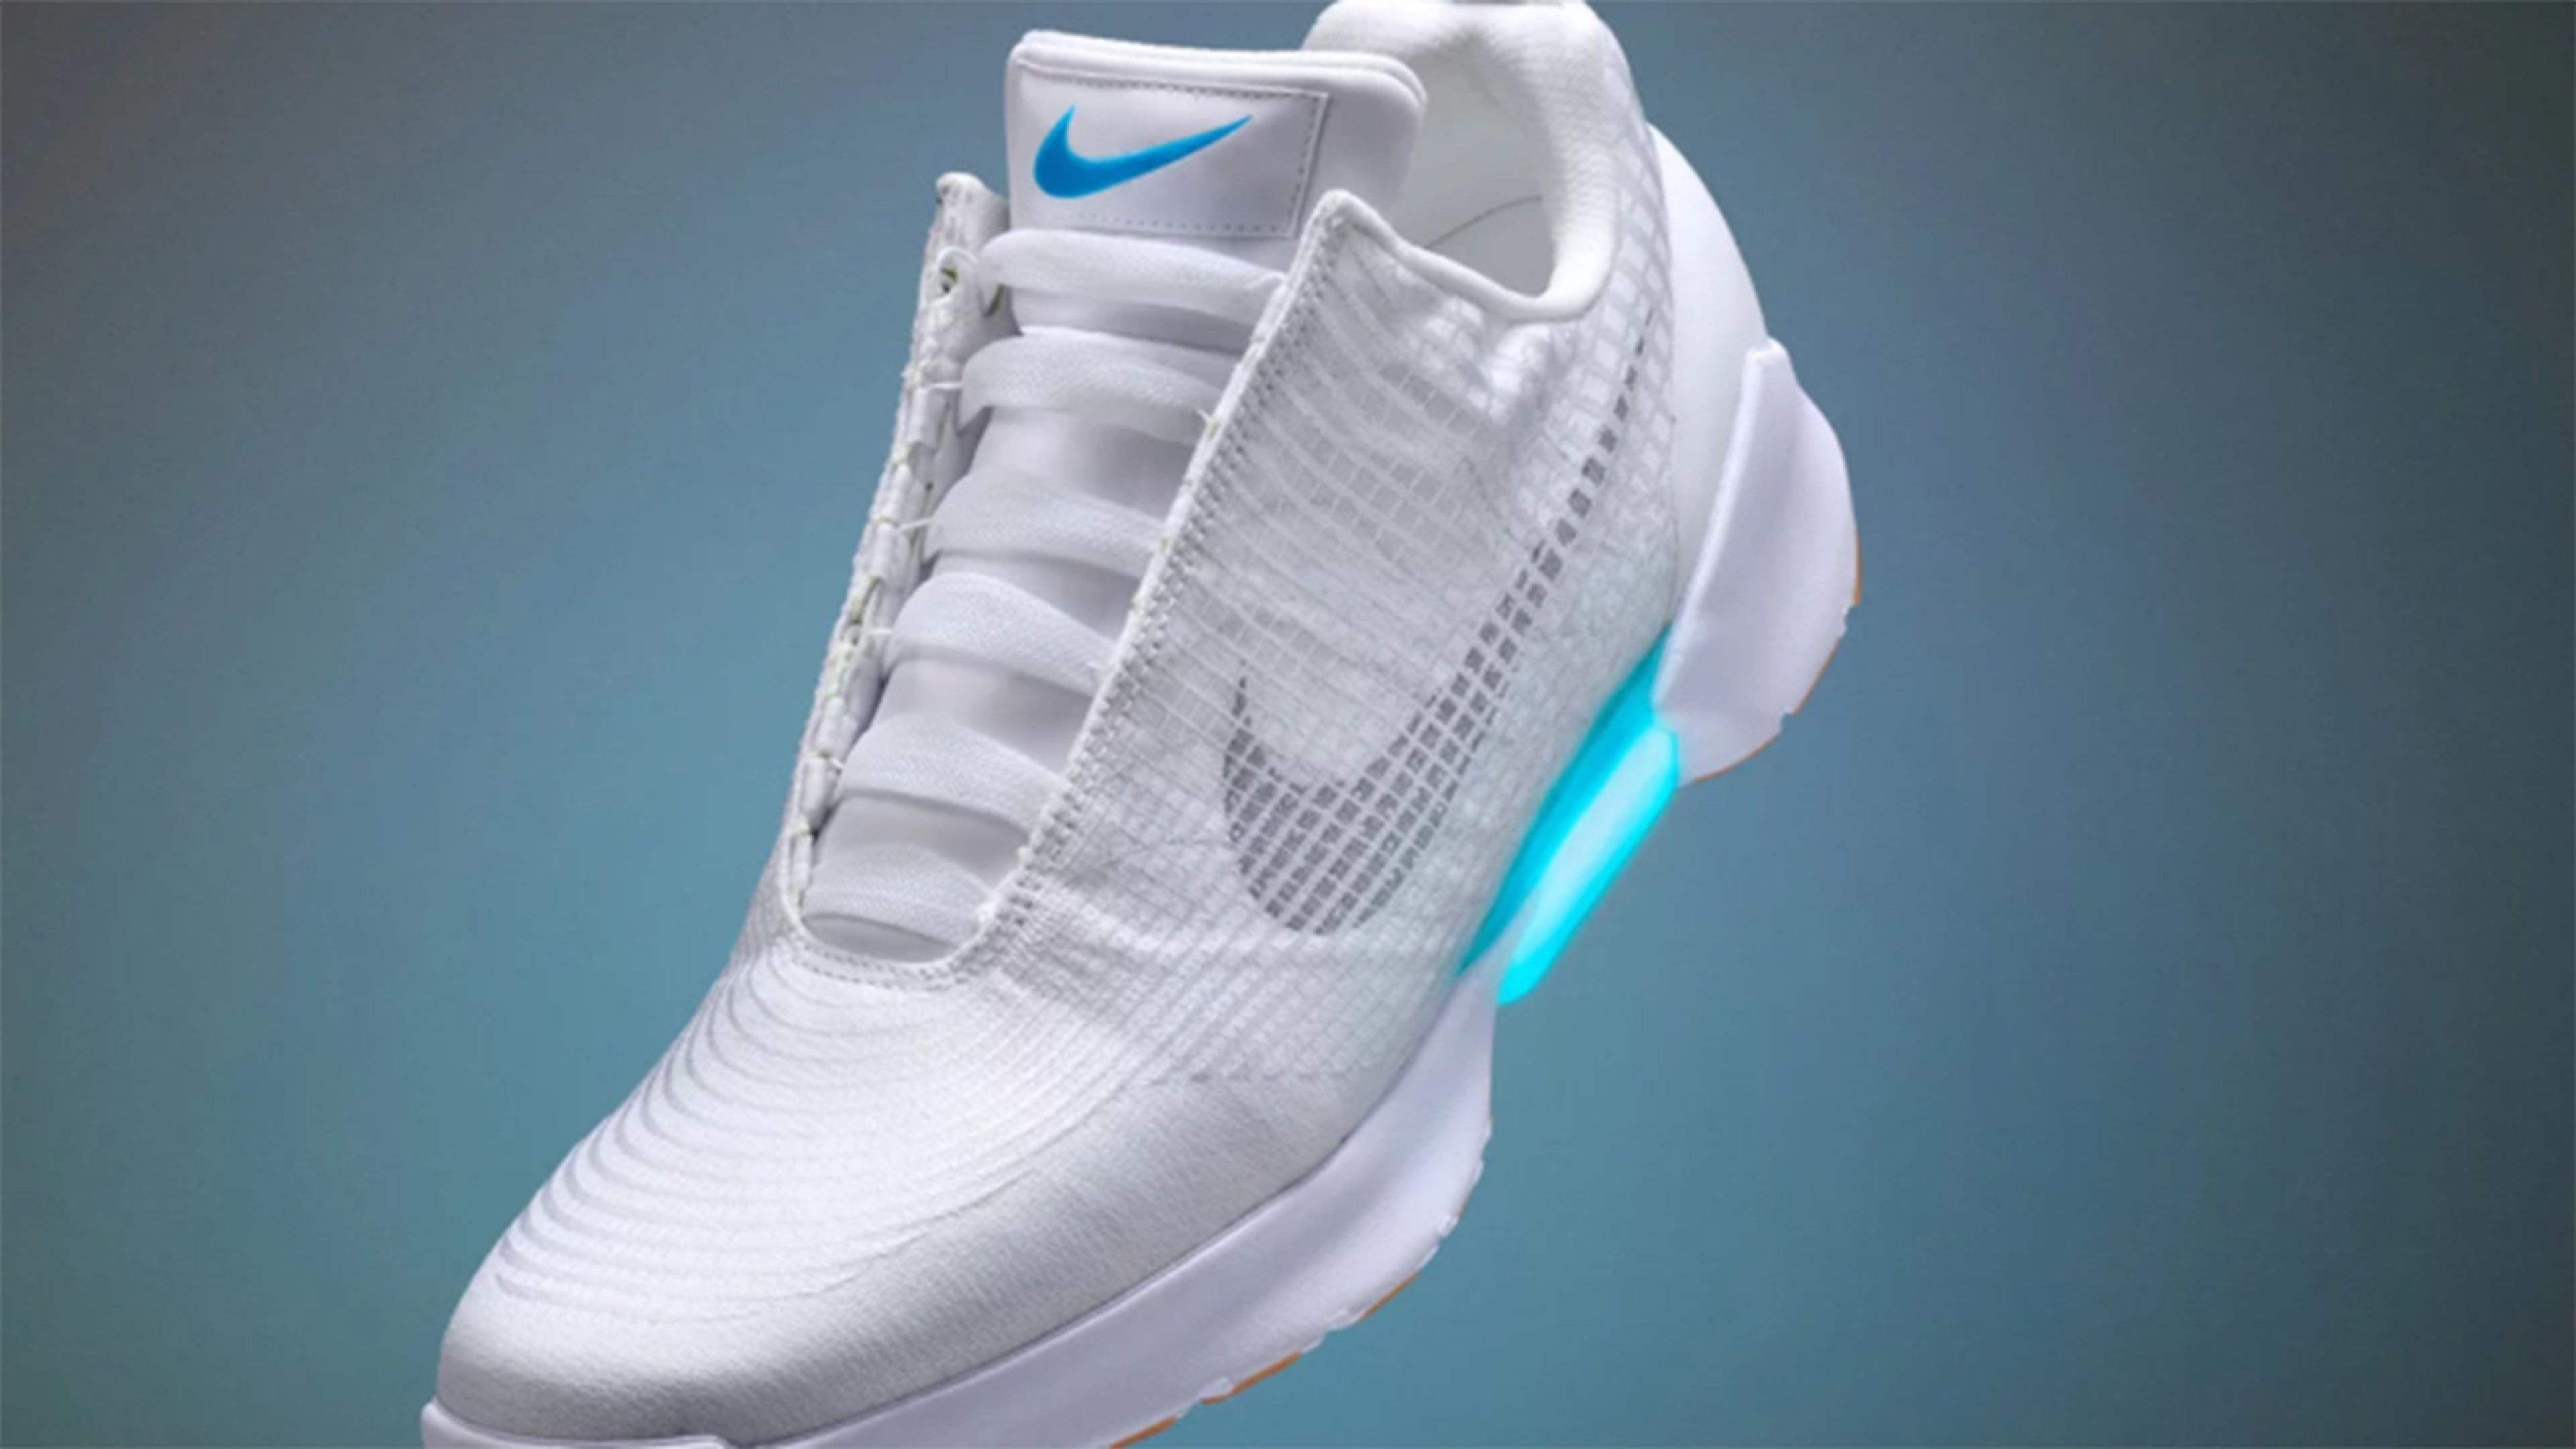 Nike más barato de sus zapatillas con robocordones en 2019 | Computer Hoy